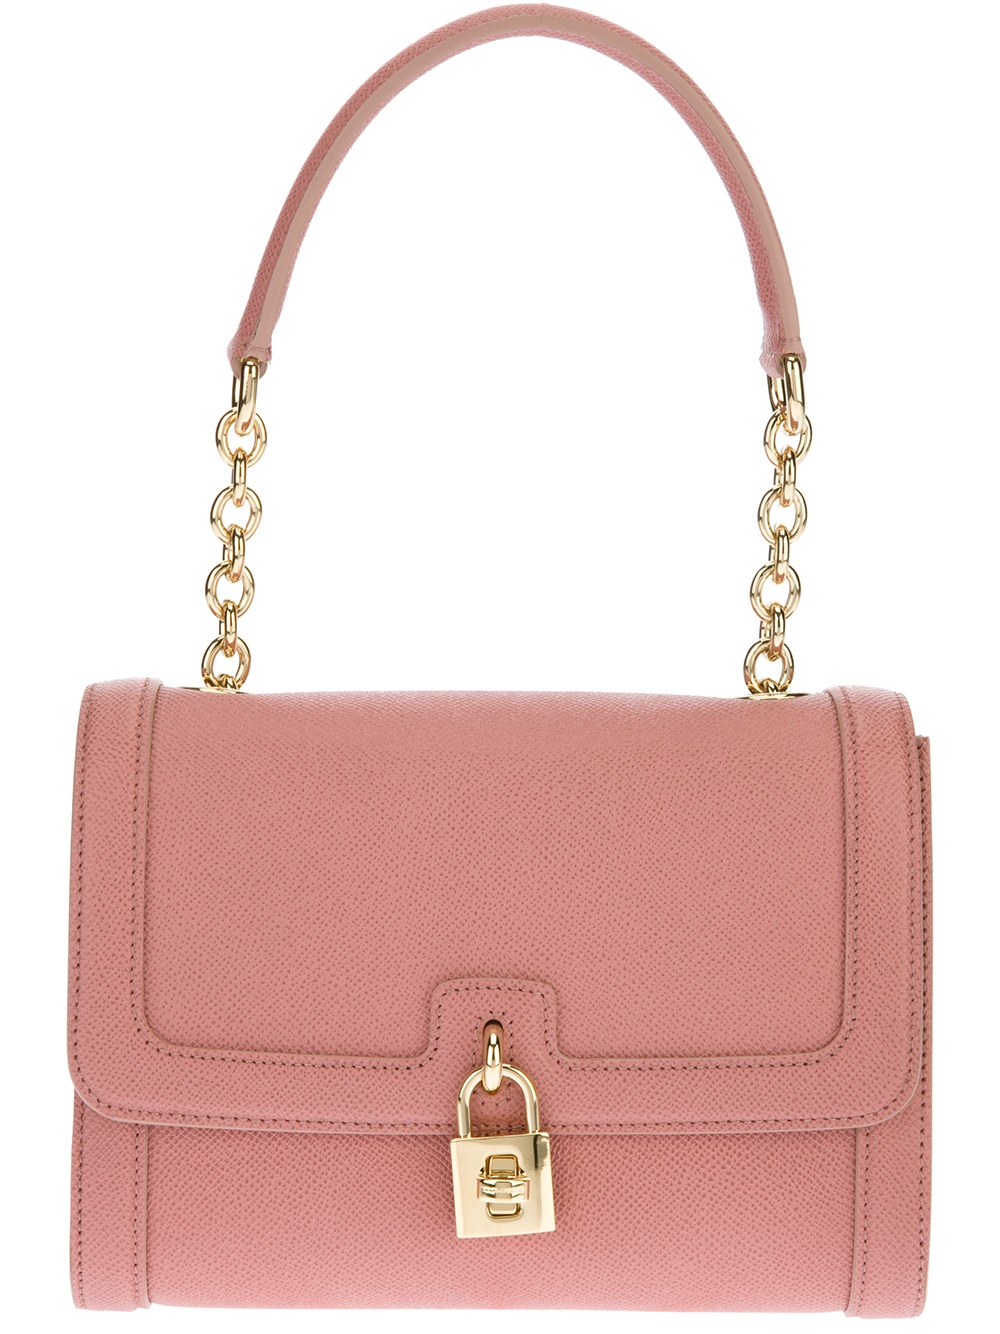 Lyst - Dolce & gabbana Leather Shoulder Bag in Pink